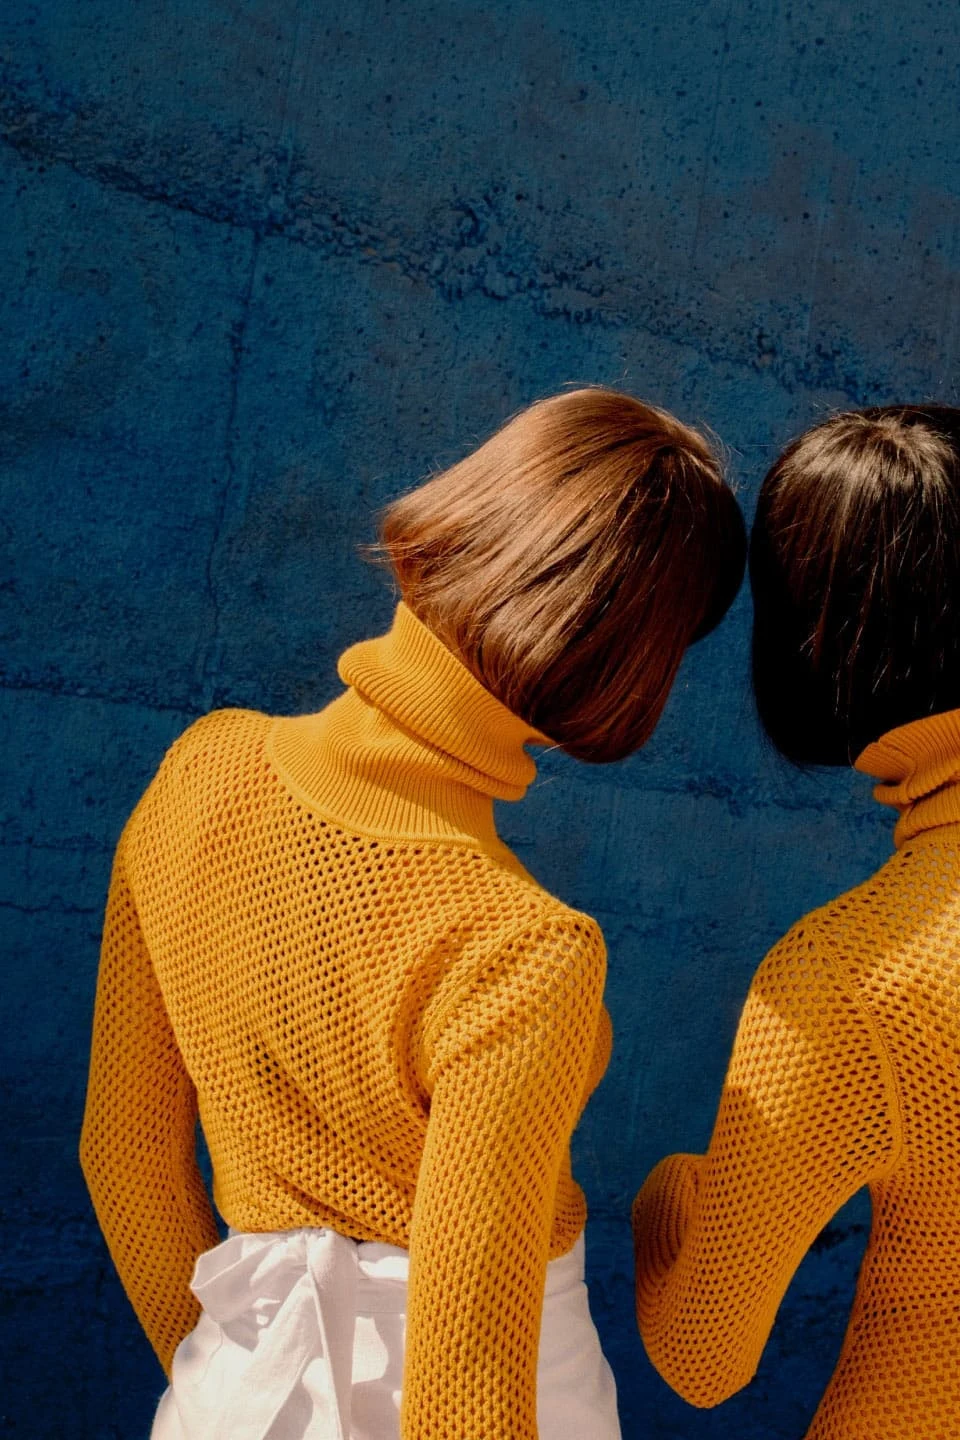 Zwei Frauen mit schulterlangen braunen Haaren in orangefarbenen Rollkragenpullovern